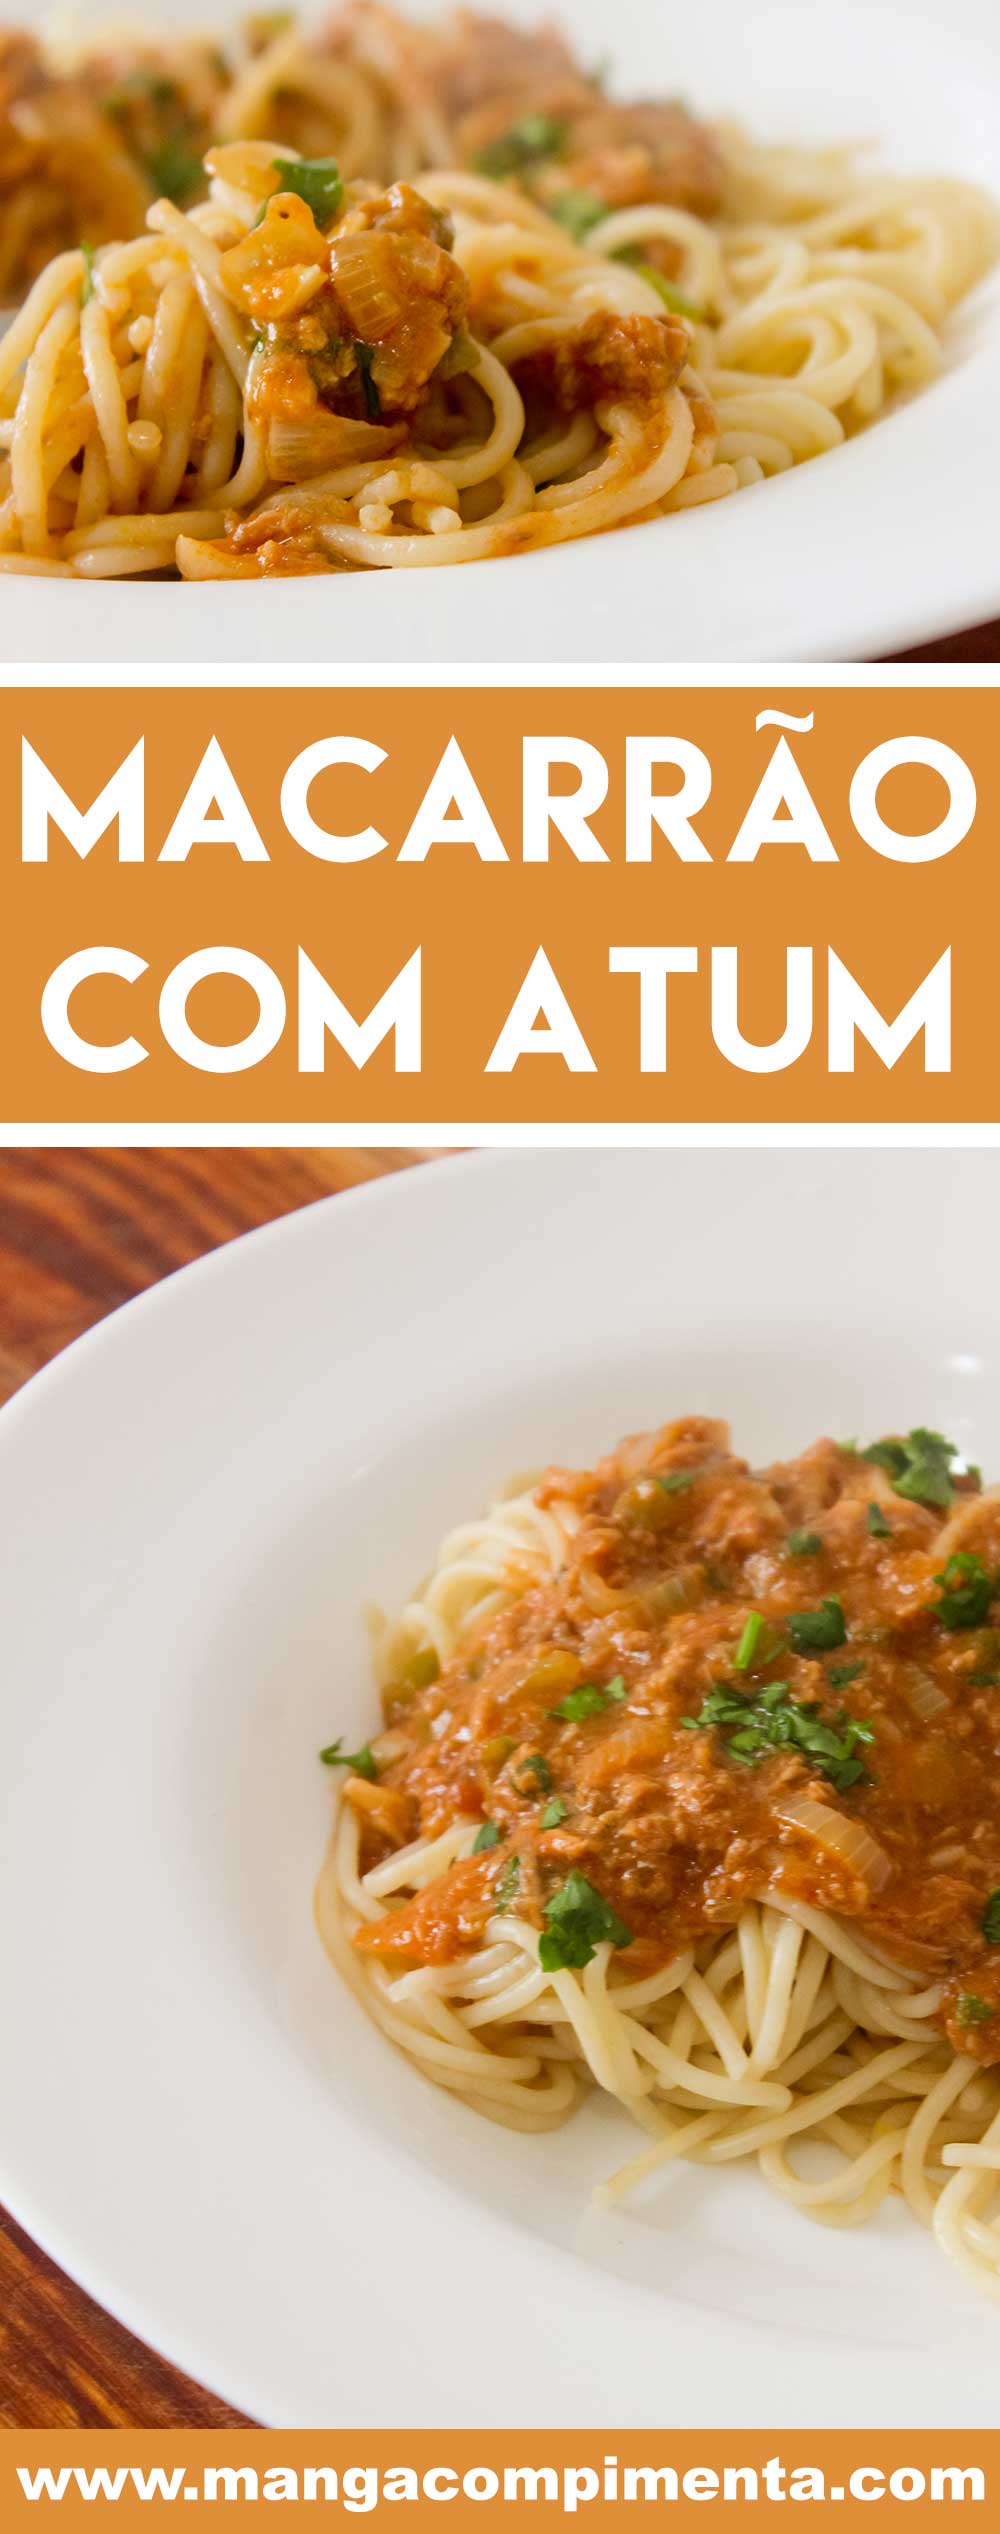 Receita de Macarrão com Atum e Molho de Tomate - para o almoço rápido, gostoso e nutritivo na semana!